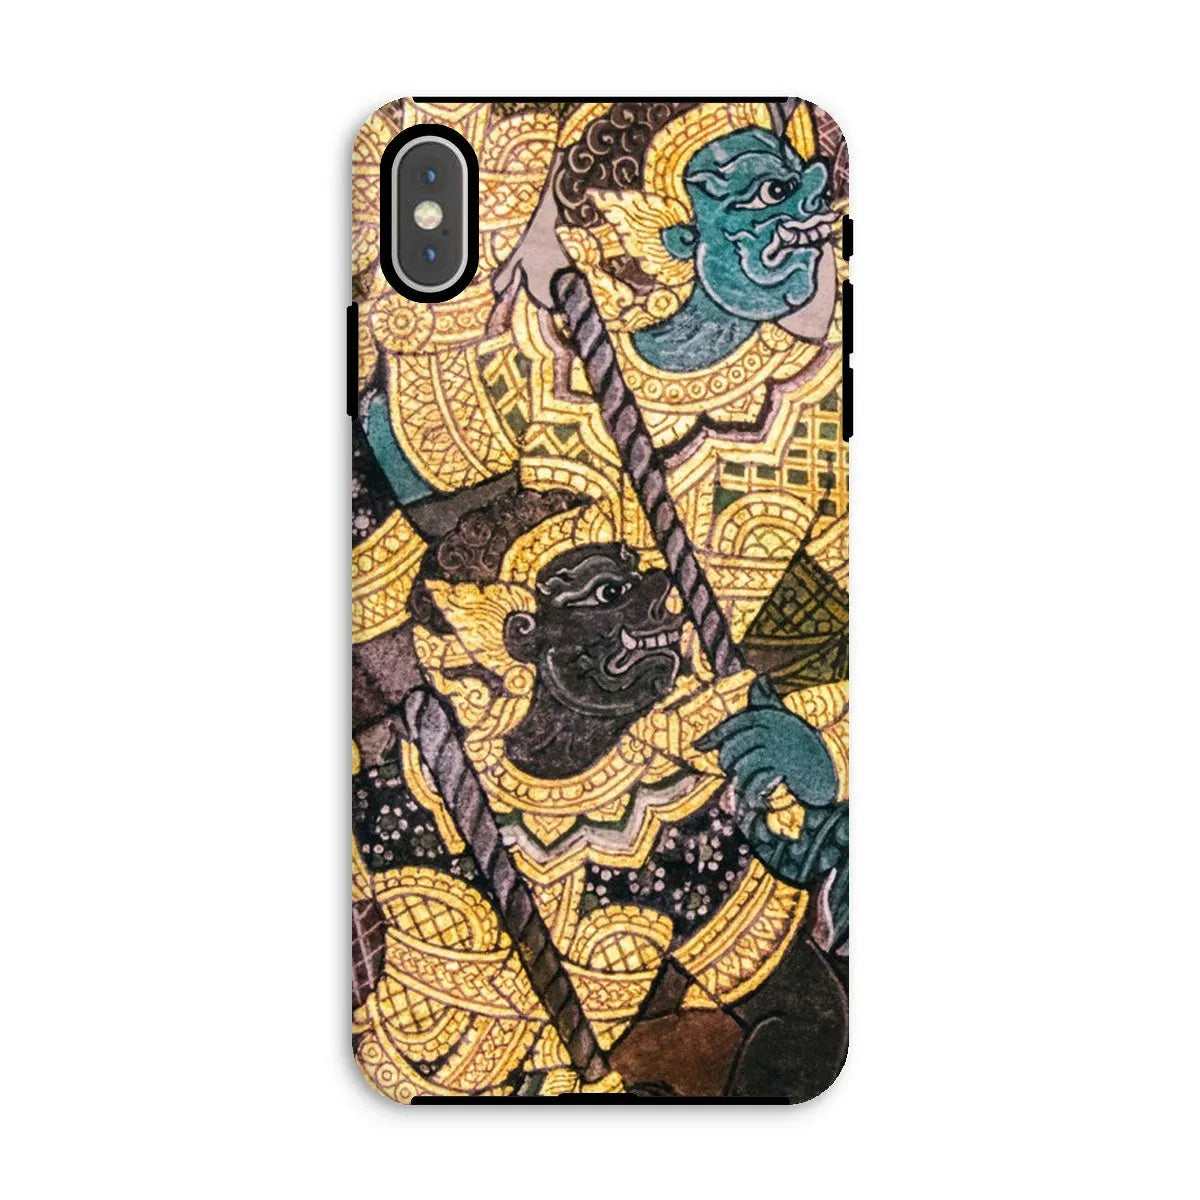 Action Men - Ancient Thai Temple Art Phone Case - Iphone Xs Max / Matte - Mobile Phone Cases - Aesthetic Art